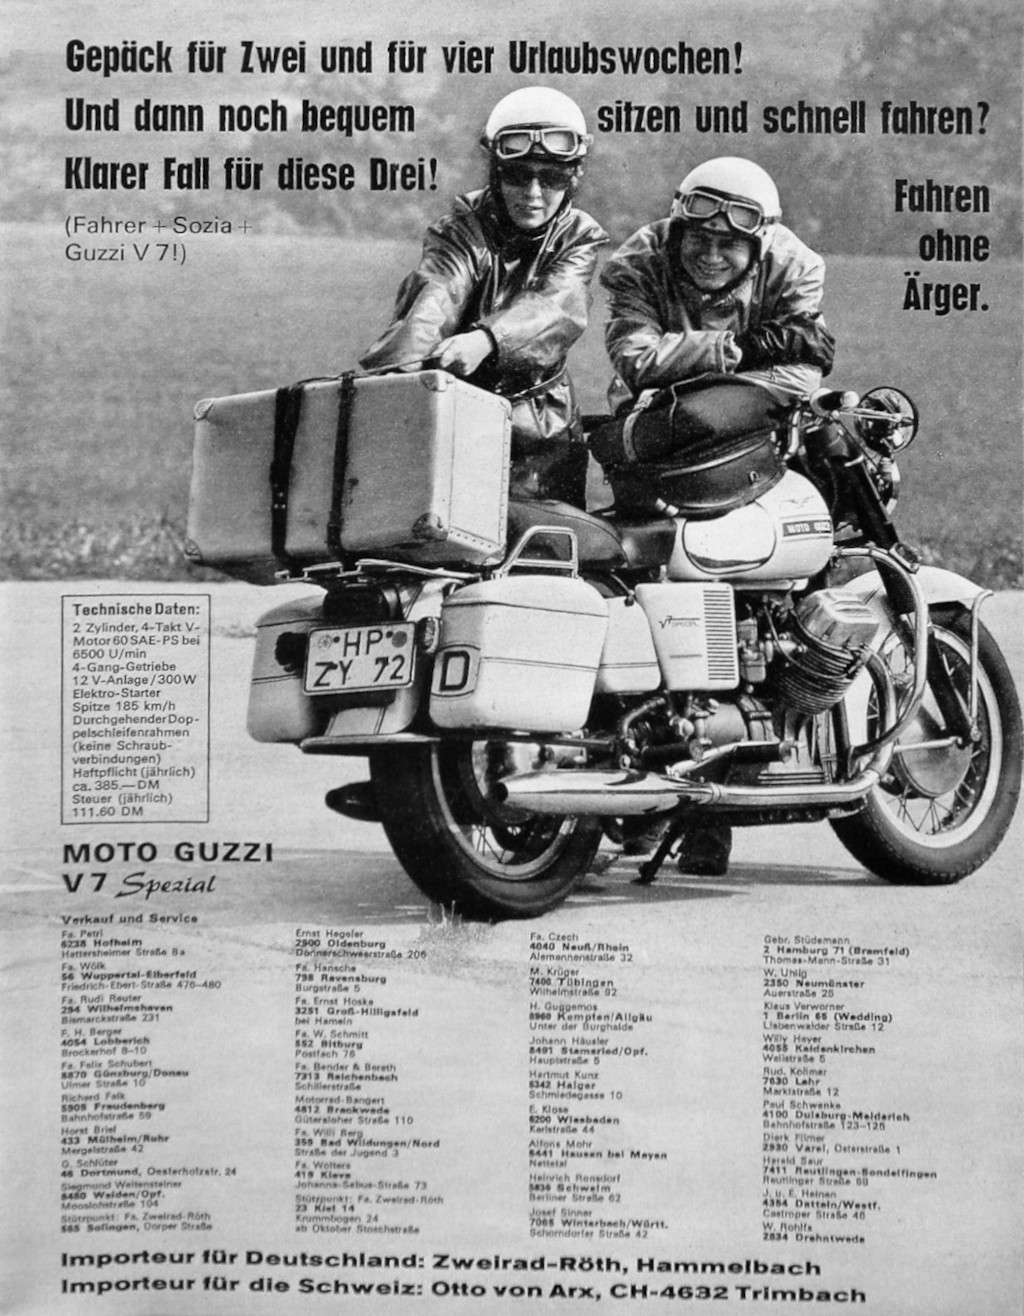 Moto Guzzi advertisement: Gepäck für zwei und für vier urlaubswochen! (1970's)